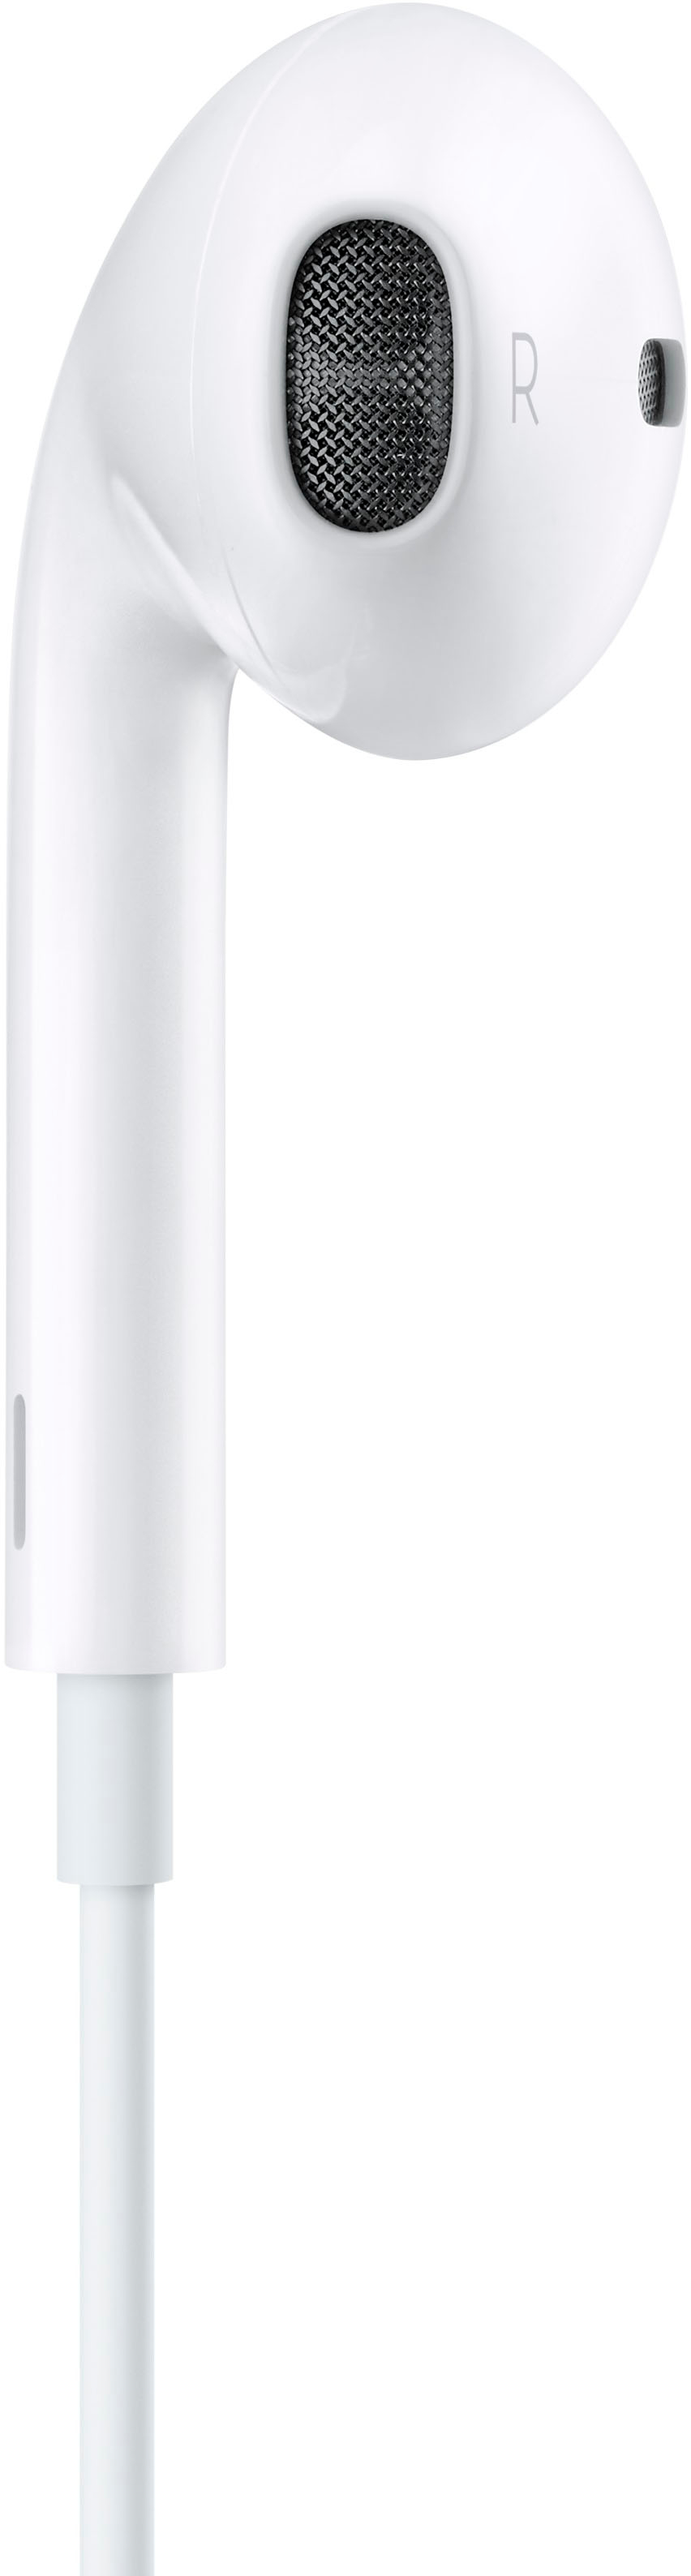 Apple EarPods (USB-C) White MTJY3AM/A - Best Buy